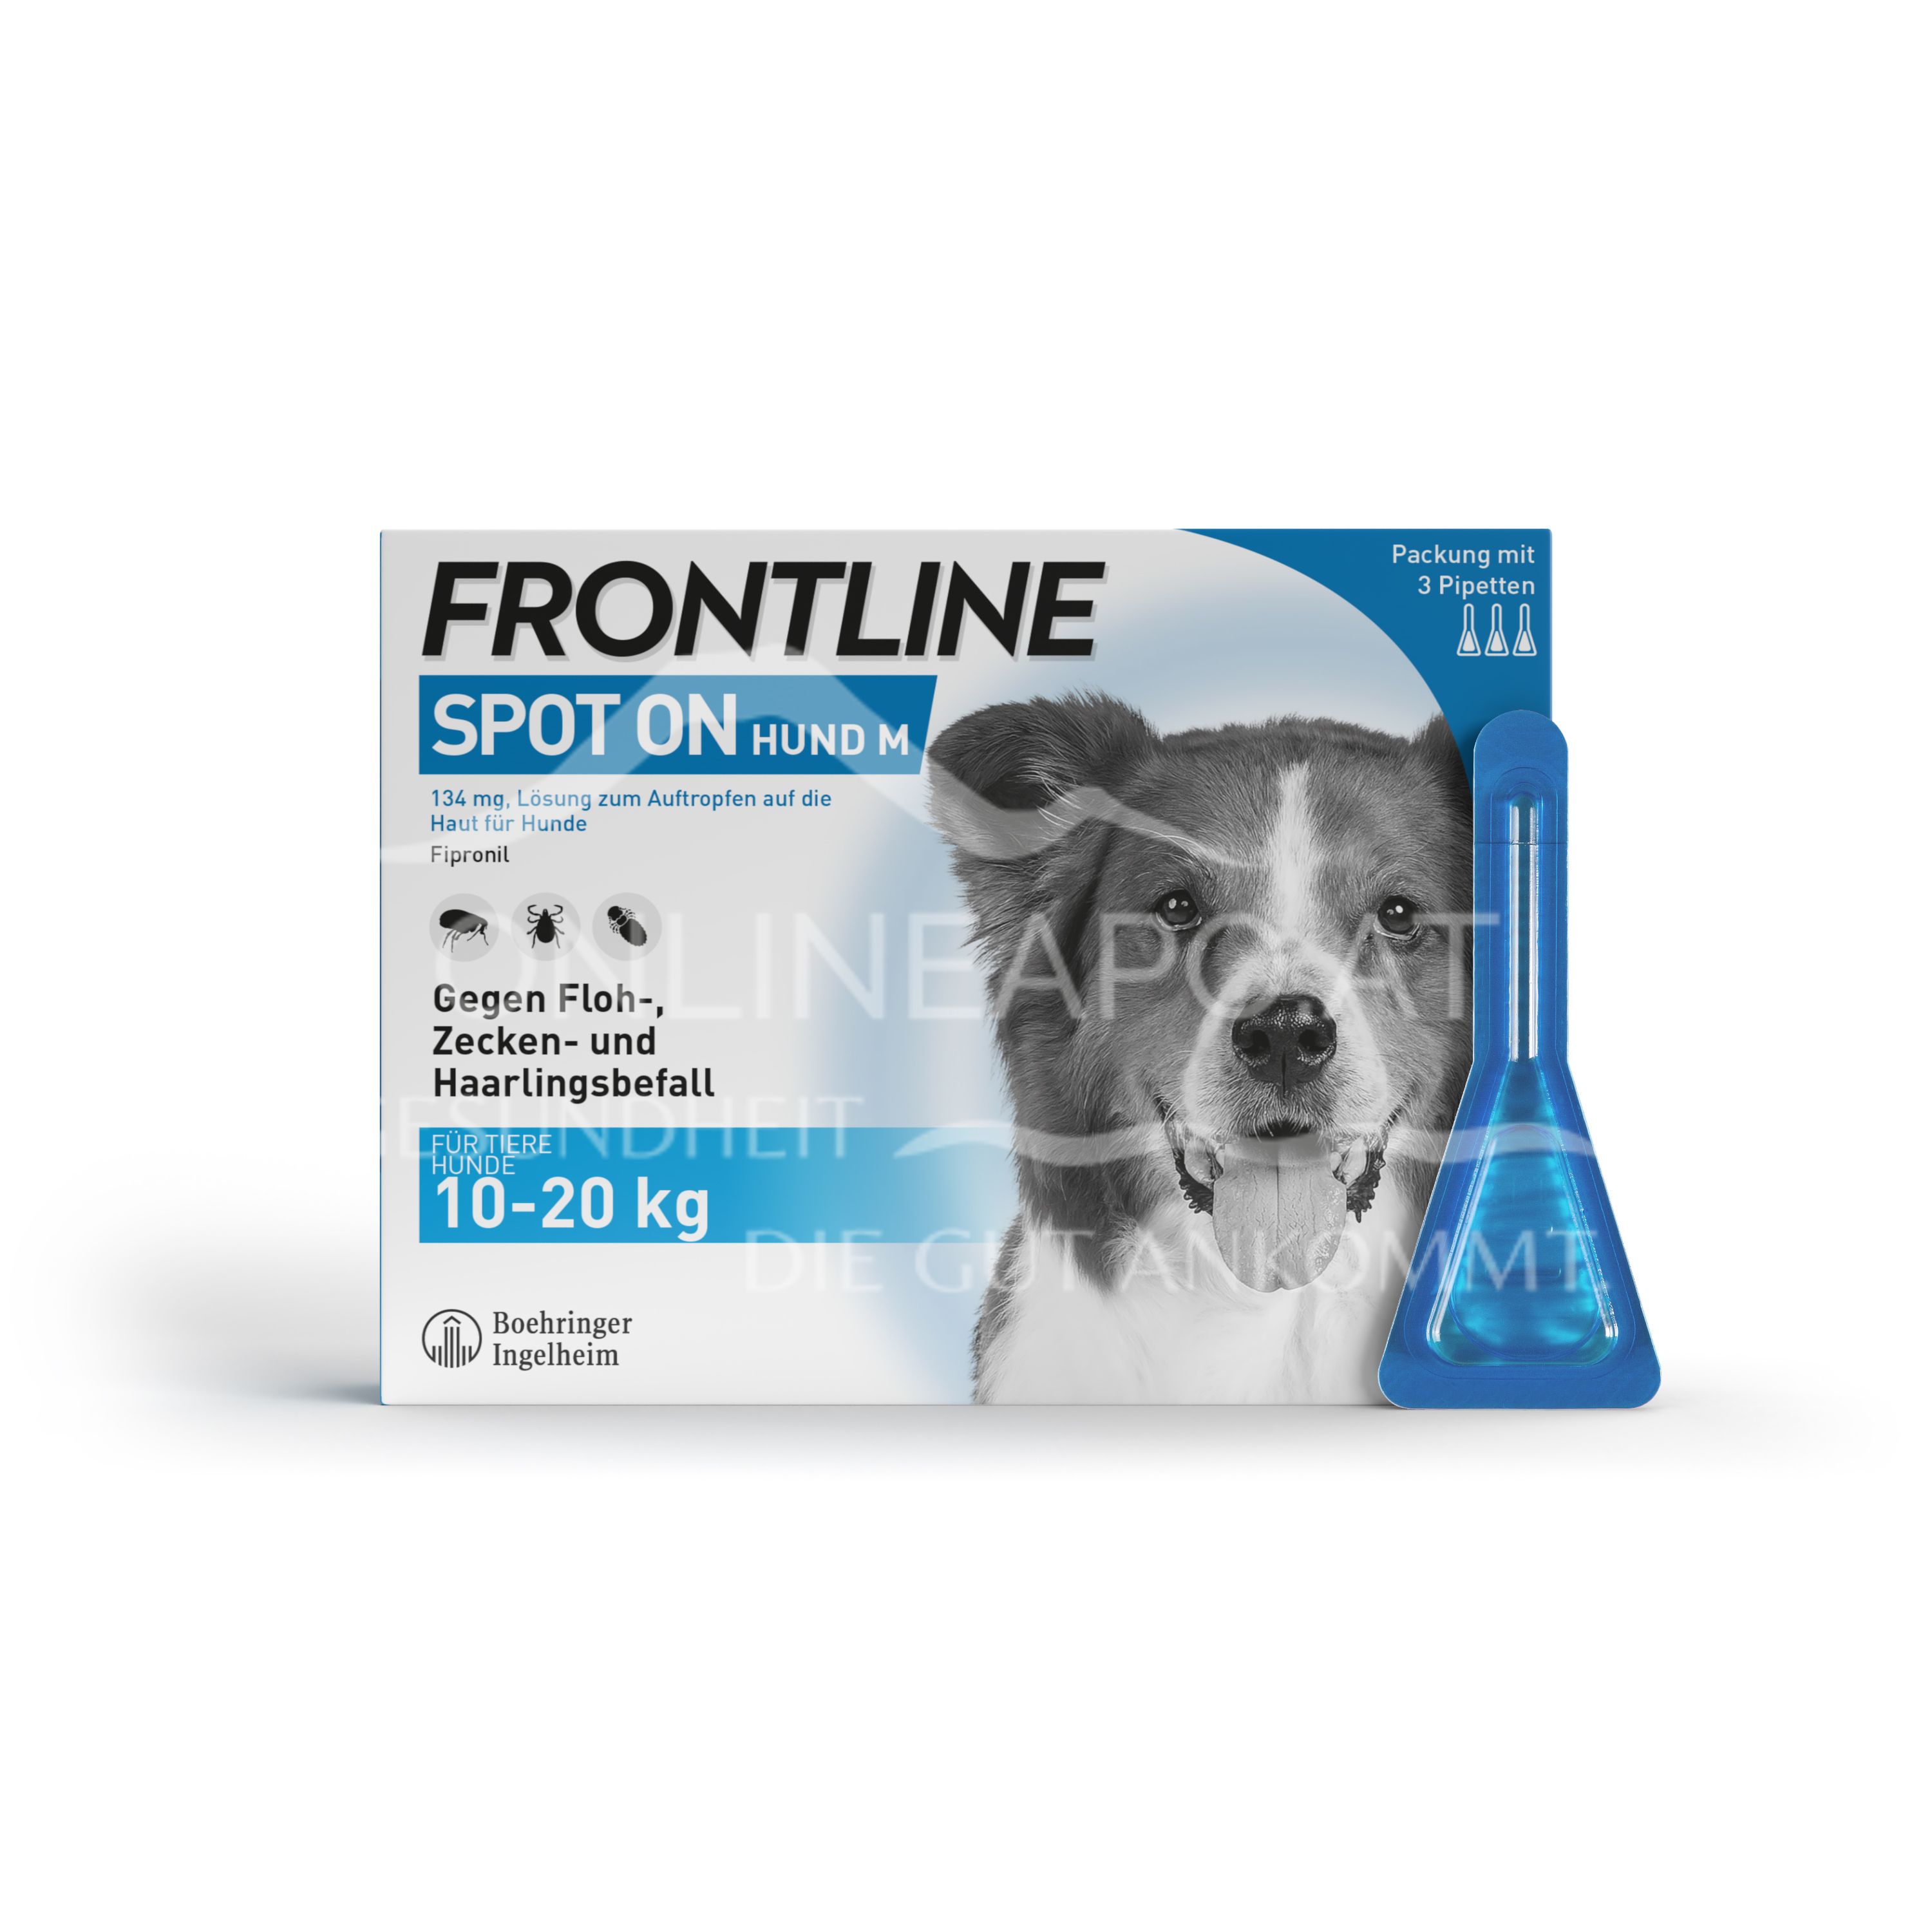 Frontline Spot-on für Mittelgroße Hunde 134 mg Lösung zum Auftropfen auf die Haut